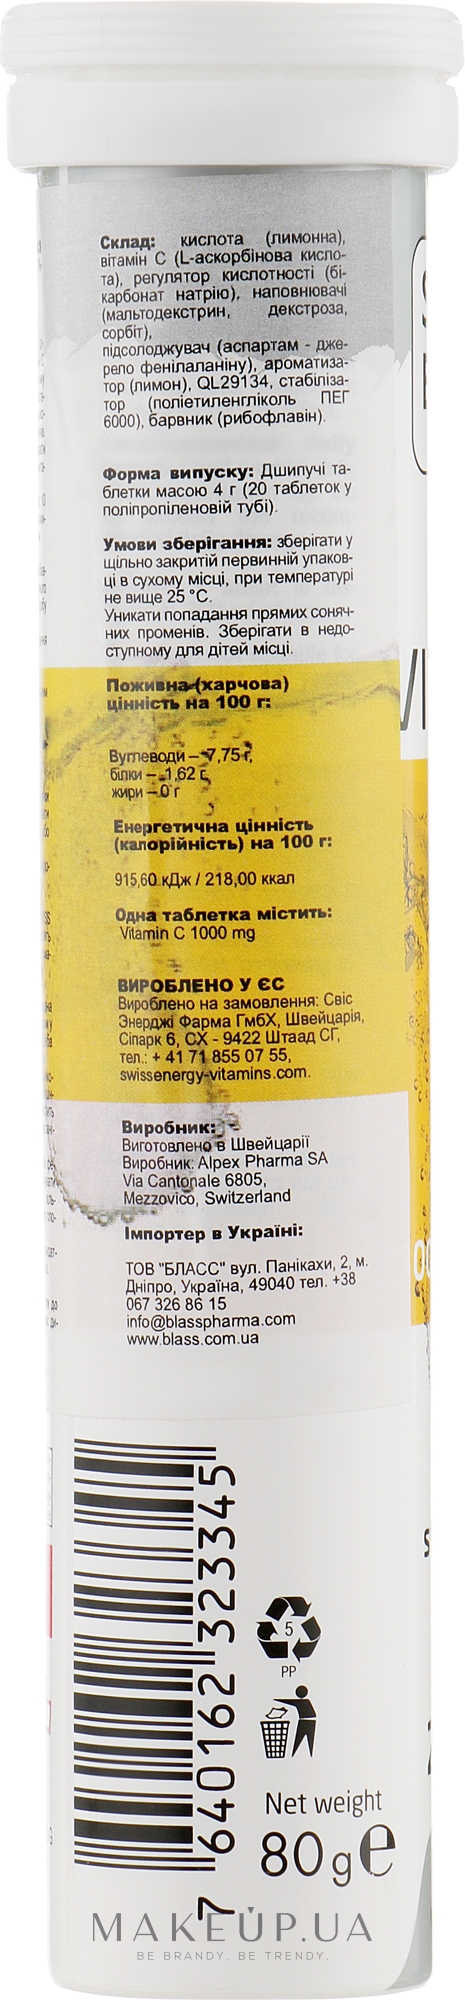 Шипучі вітаміни "Вітамін С", 1000 мг